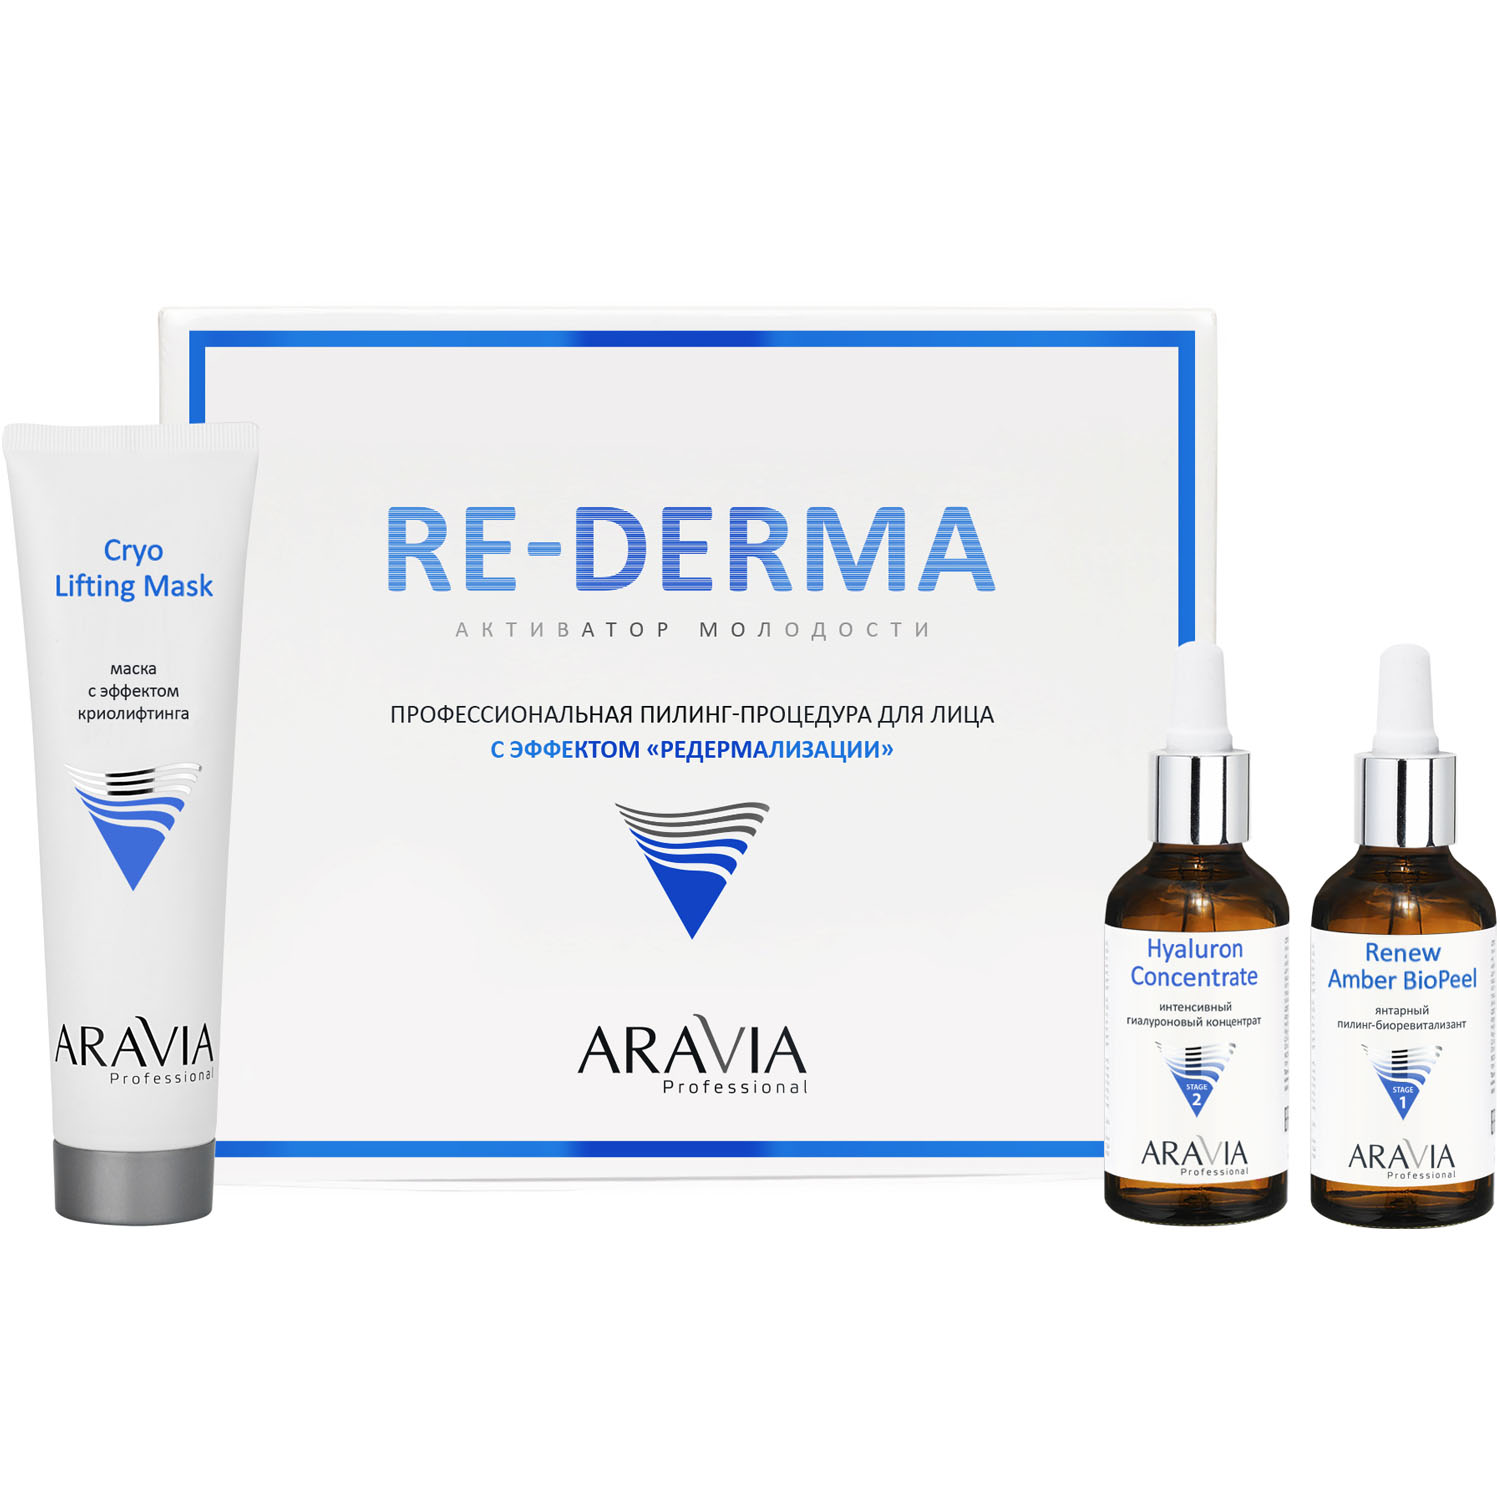 цена Aravia Professional Профессиональная пилинг-процедура для лица с эффектом «Редермализации» Re-Derma (Aravia Professional, Уход за лицом)